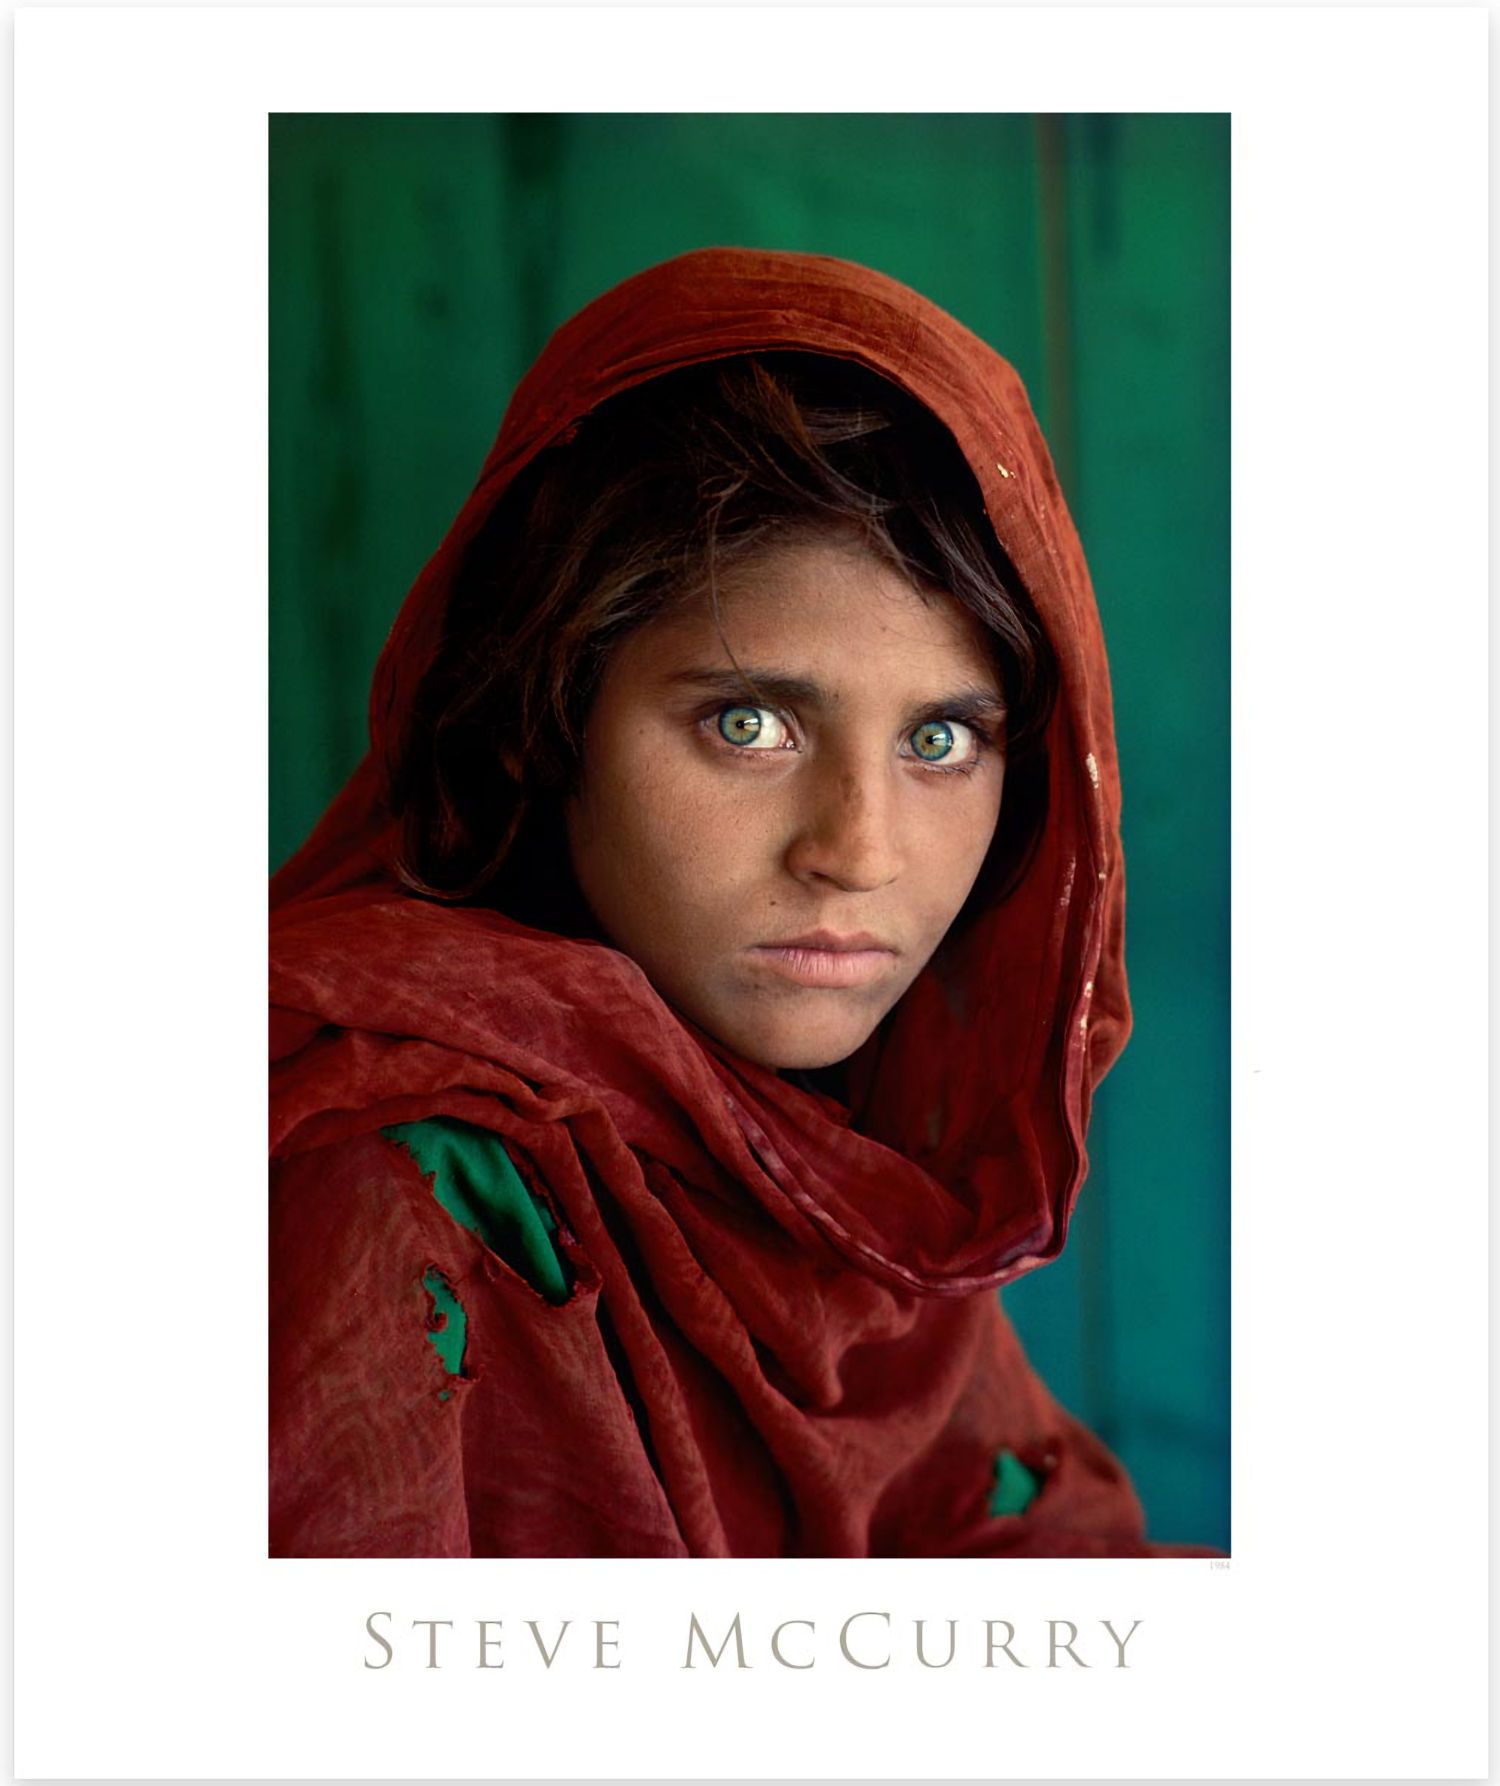 Steve McCurry Steve McCurry

Ragazza afgana

Stampa su carta da poster

Dimensio&hellip;